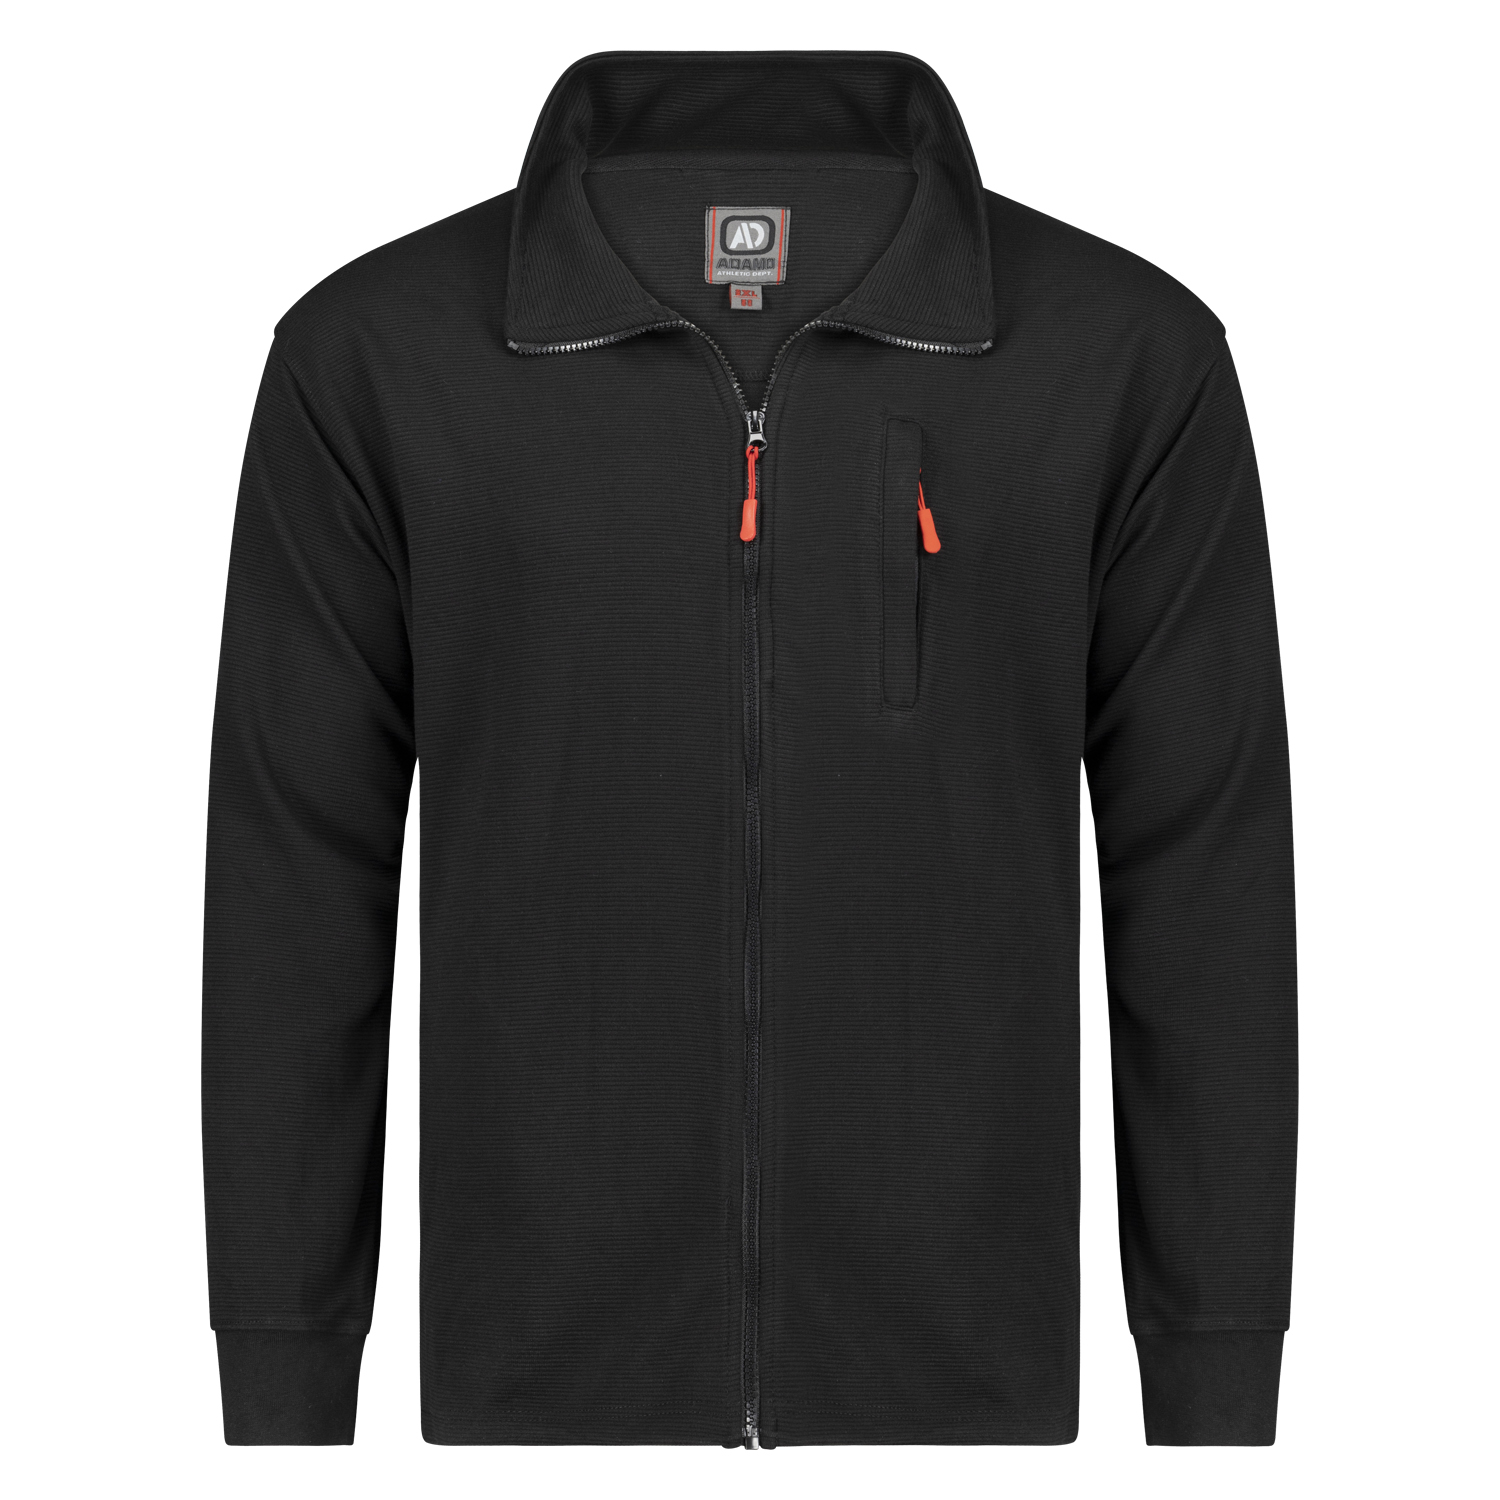 Sweat-shirt zippé ottoman côte noir série Max by Adamo en grandes tailles jusqu'au 10XL